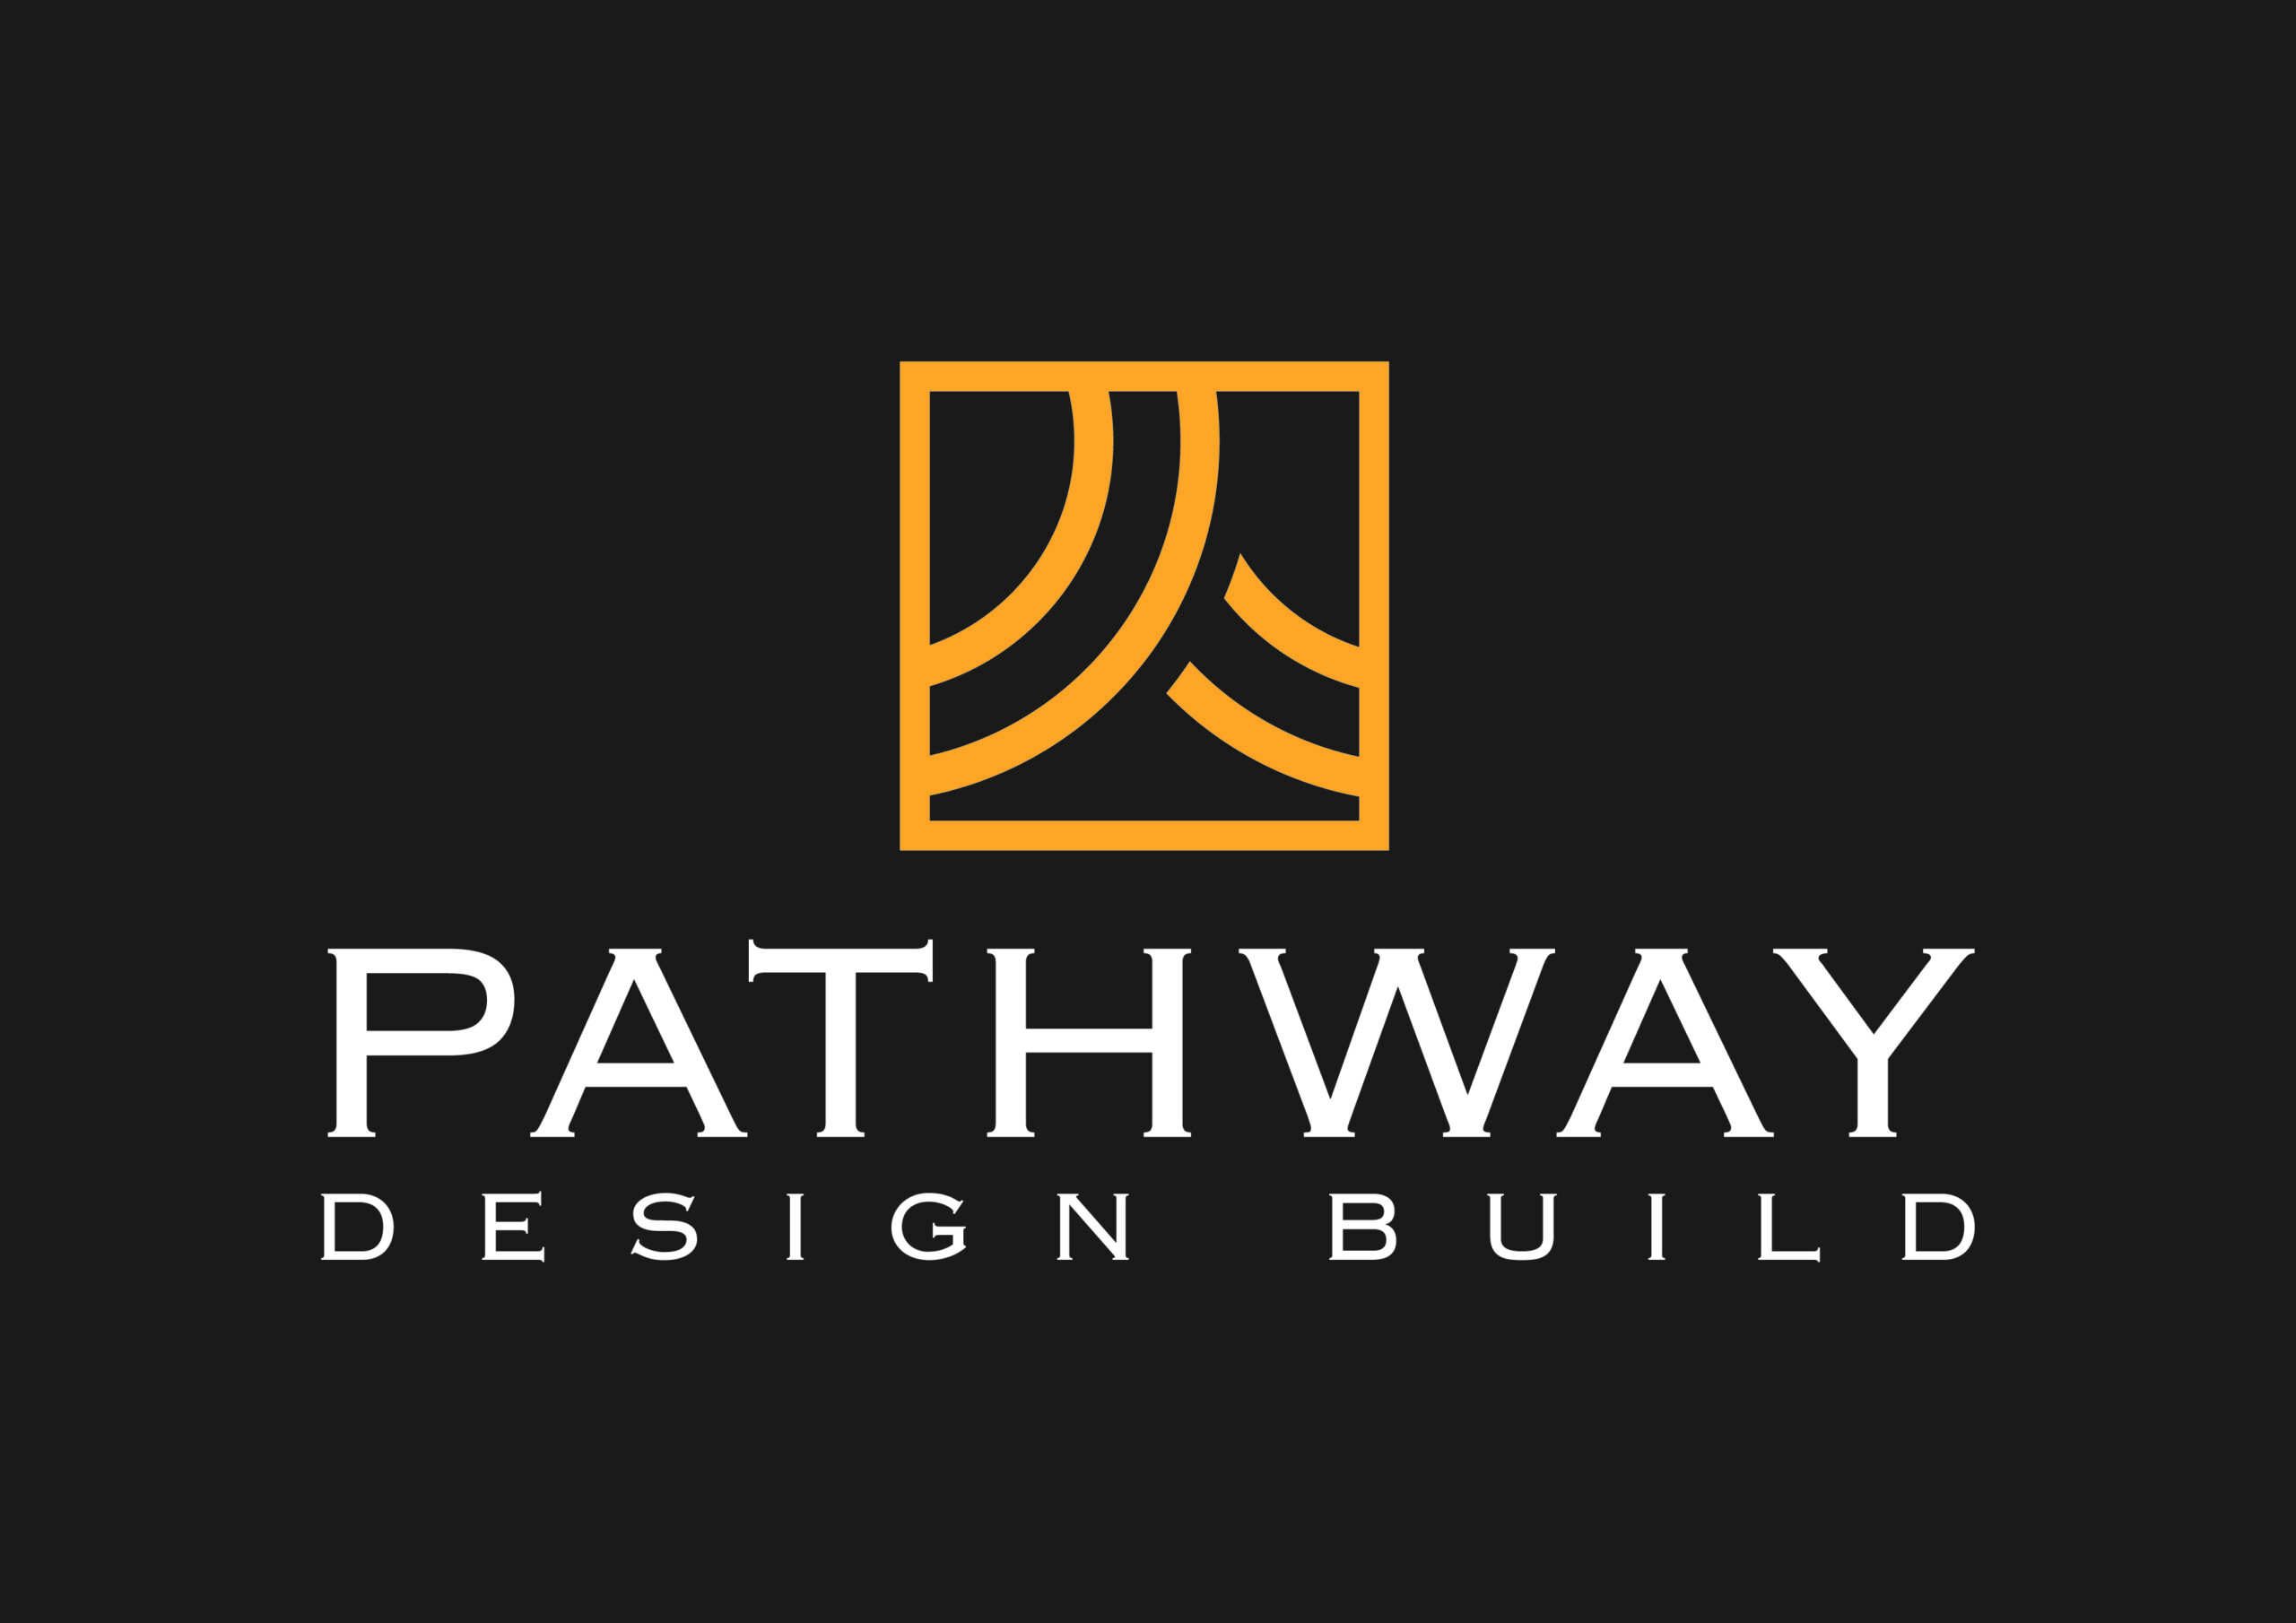 Pathway site logo on dark